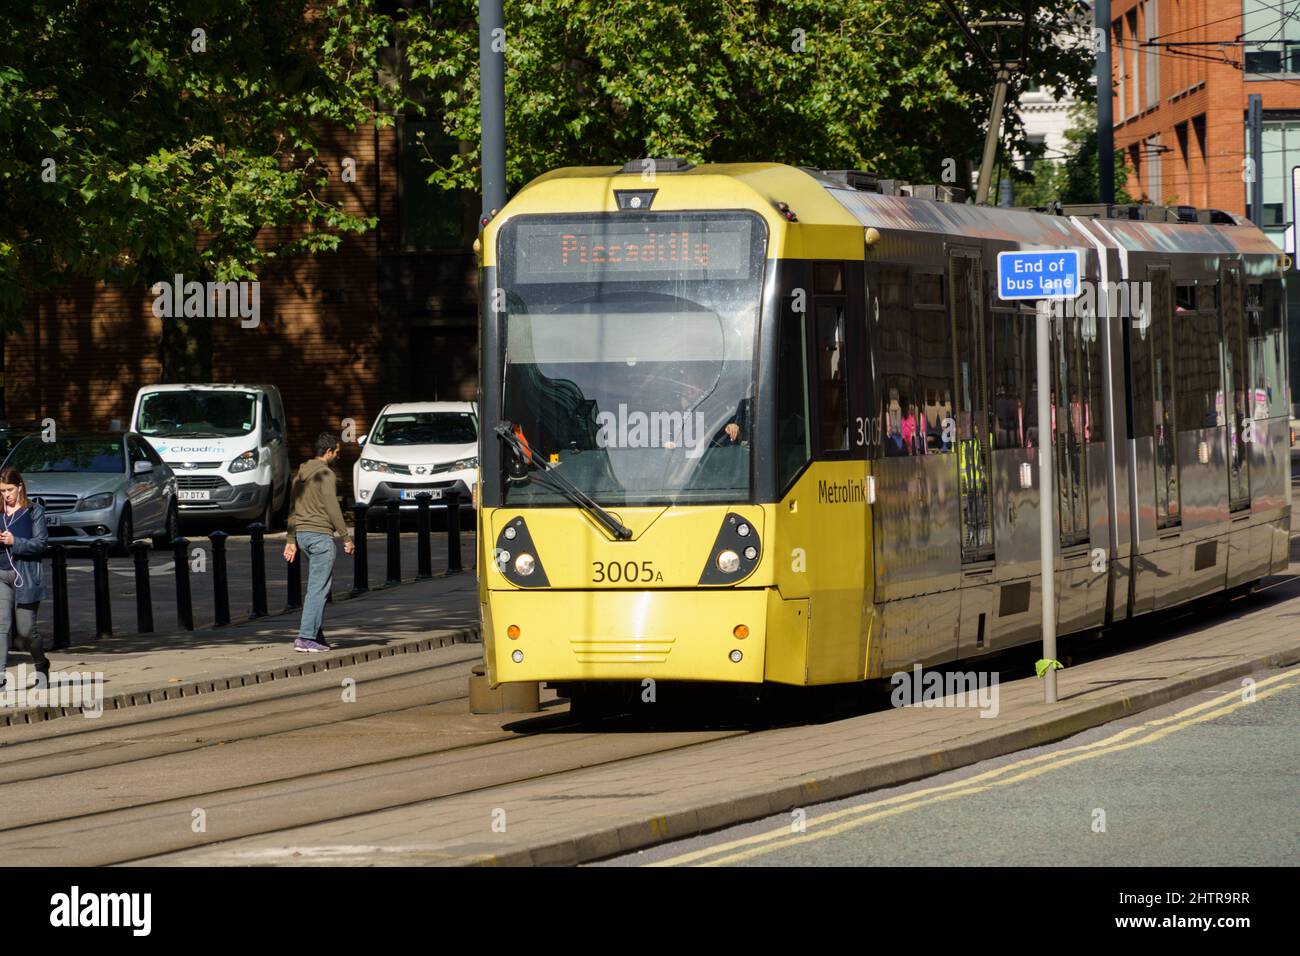 Le système central de train léger du Grand Manchester est traversé par un tramway électrique jaune Metrolink. Banque D'Images